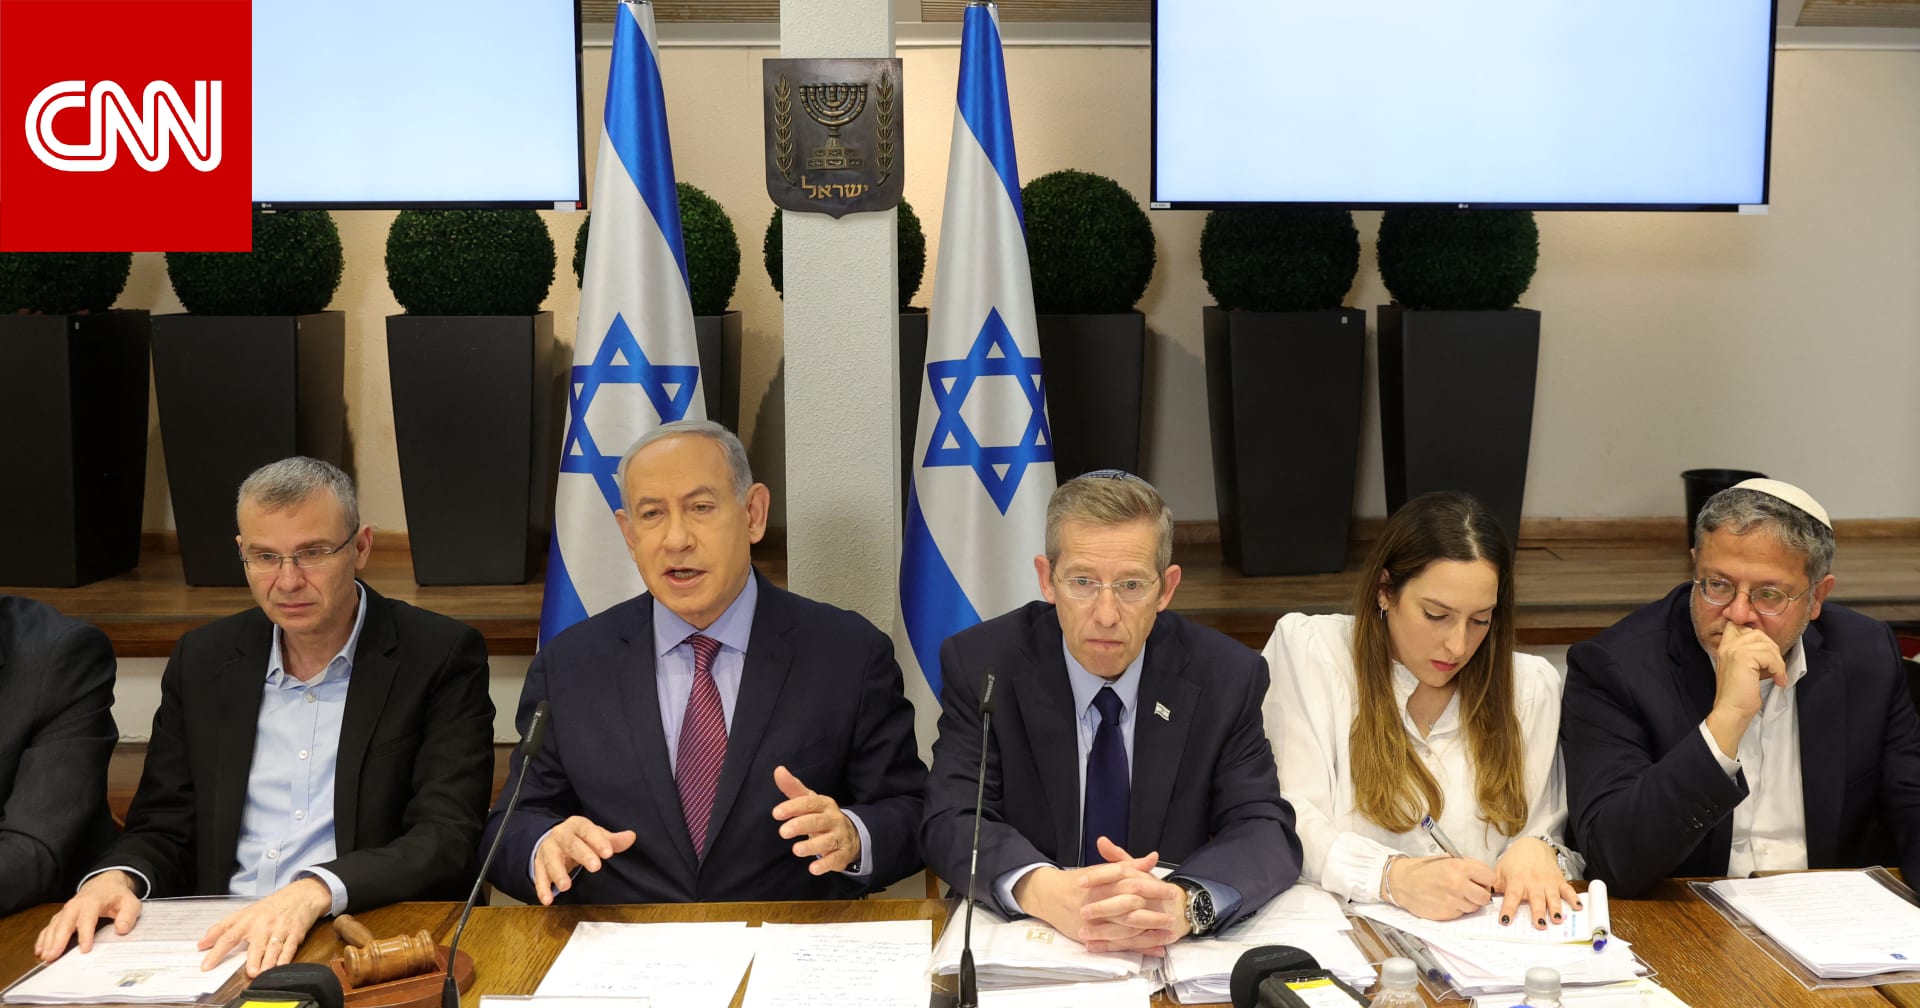 انقسامات الحكومة الإسرائيلية تظهر للعلن بعد "قتال" في مجلس الوزراء الأمني